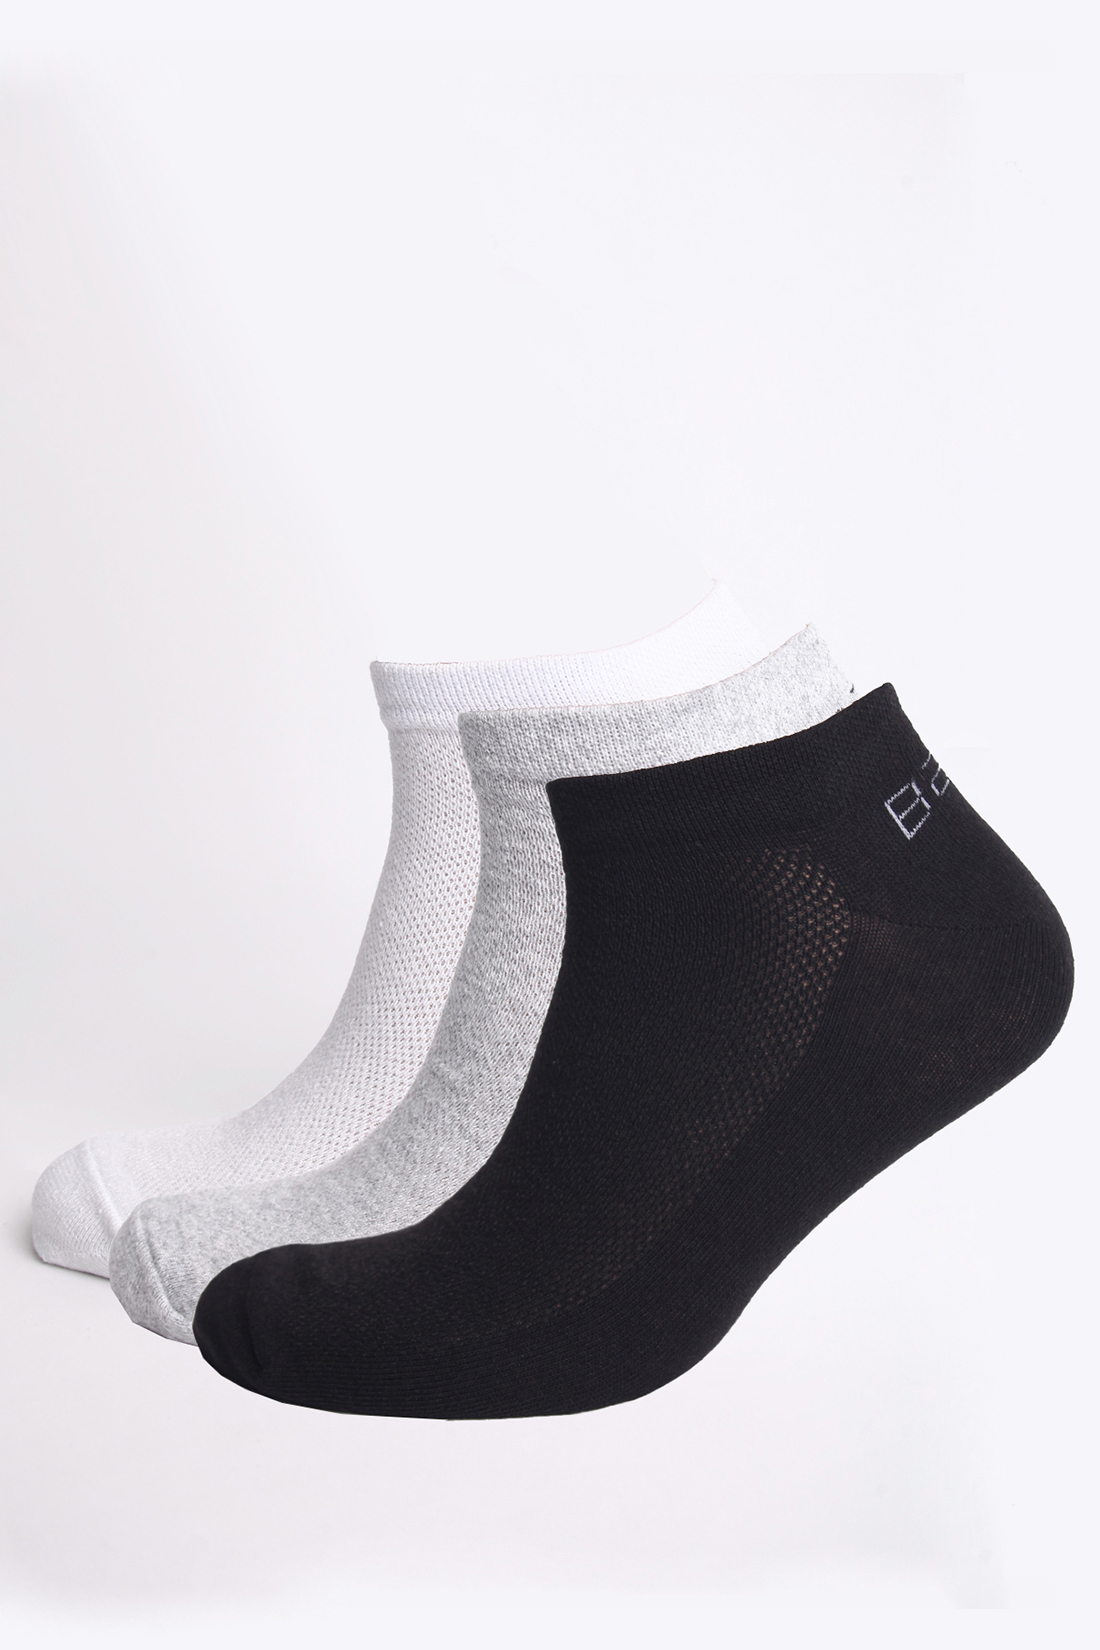 Мужские носки, 3 пары (арт. baon B891205), размер 43/45, цвет серый